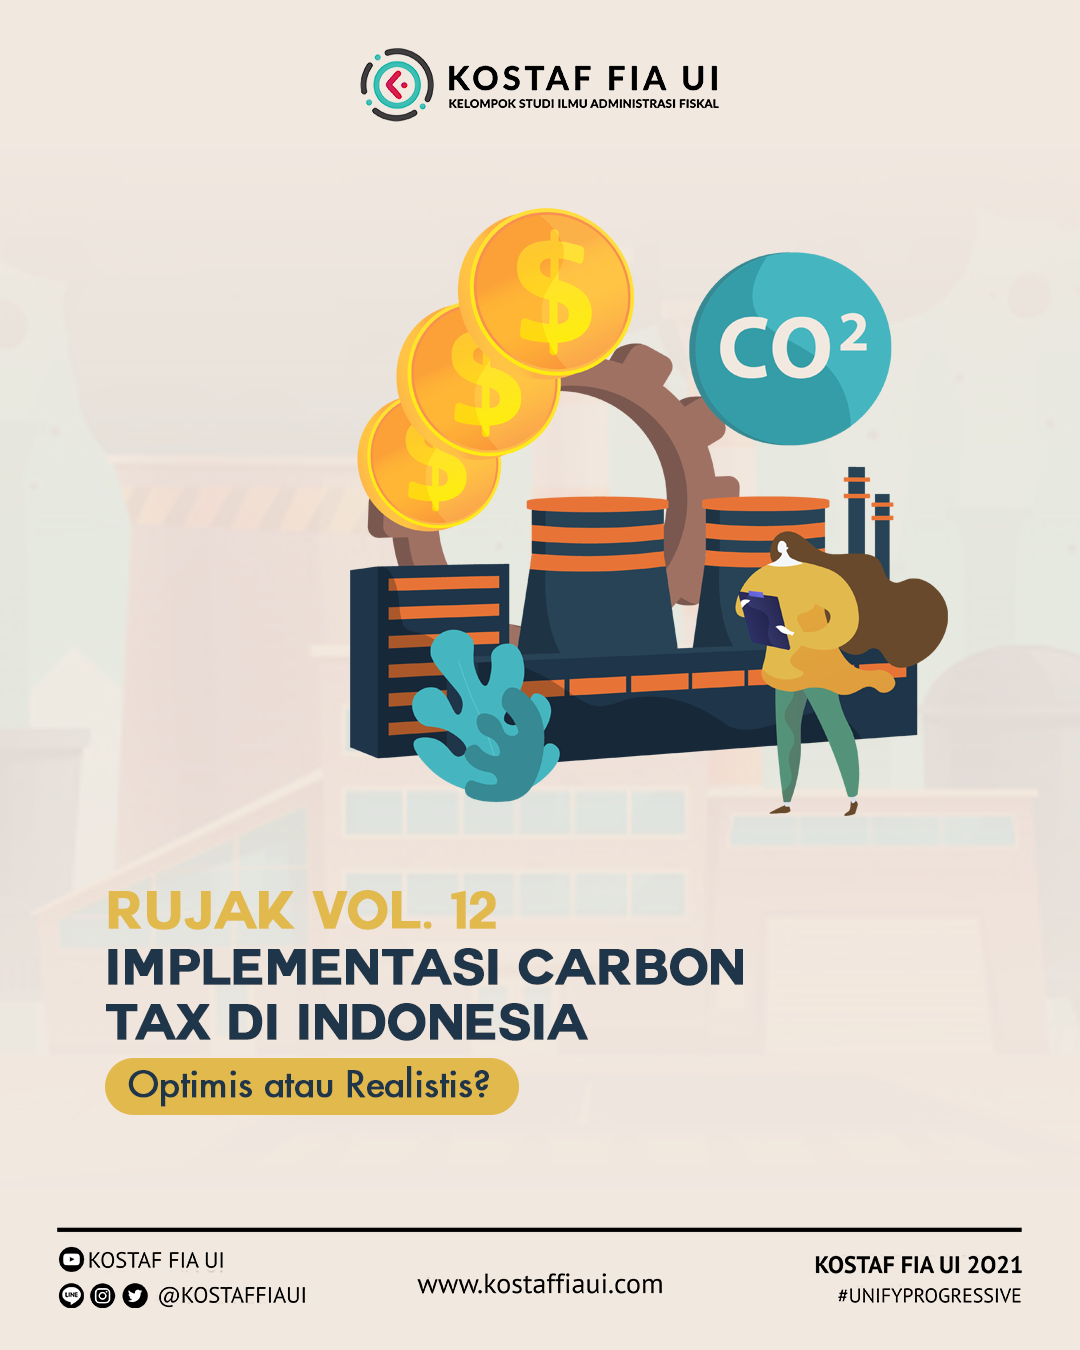 Mena Li - Implementasi Carbon Tax di Indonesia: Optimis atau Realistis? | by Himpunan  Mahasiswa Fiskal (KOSTAF FIA UI) | Medium